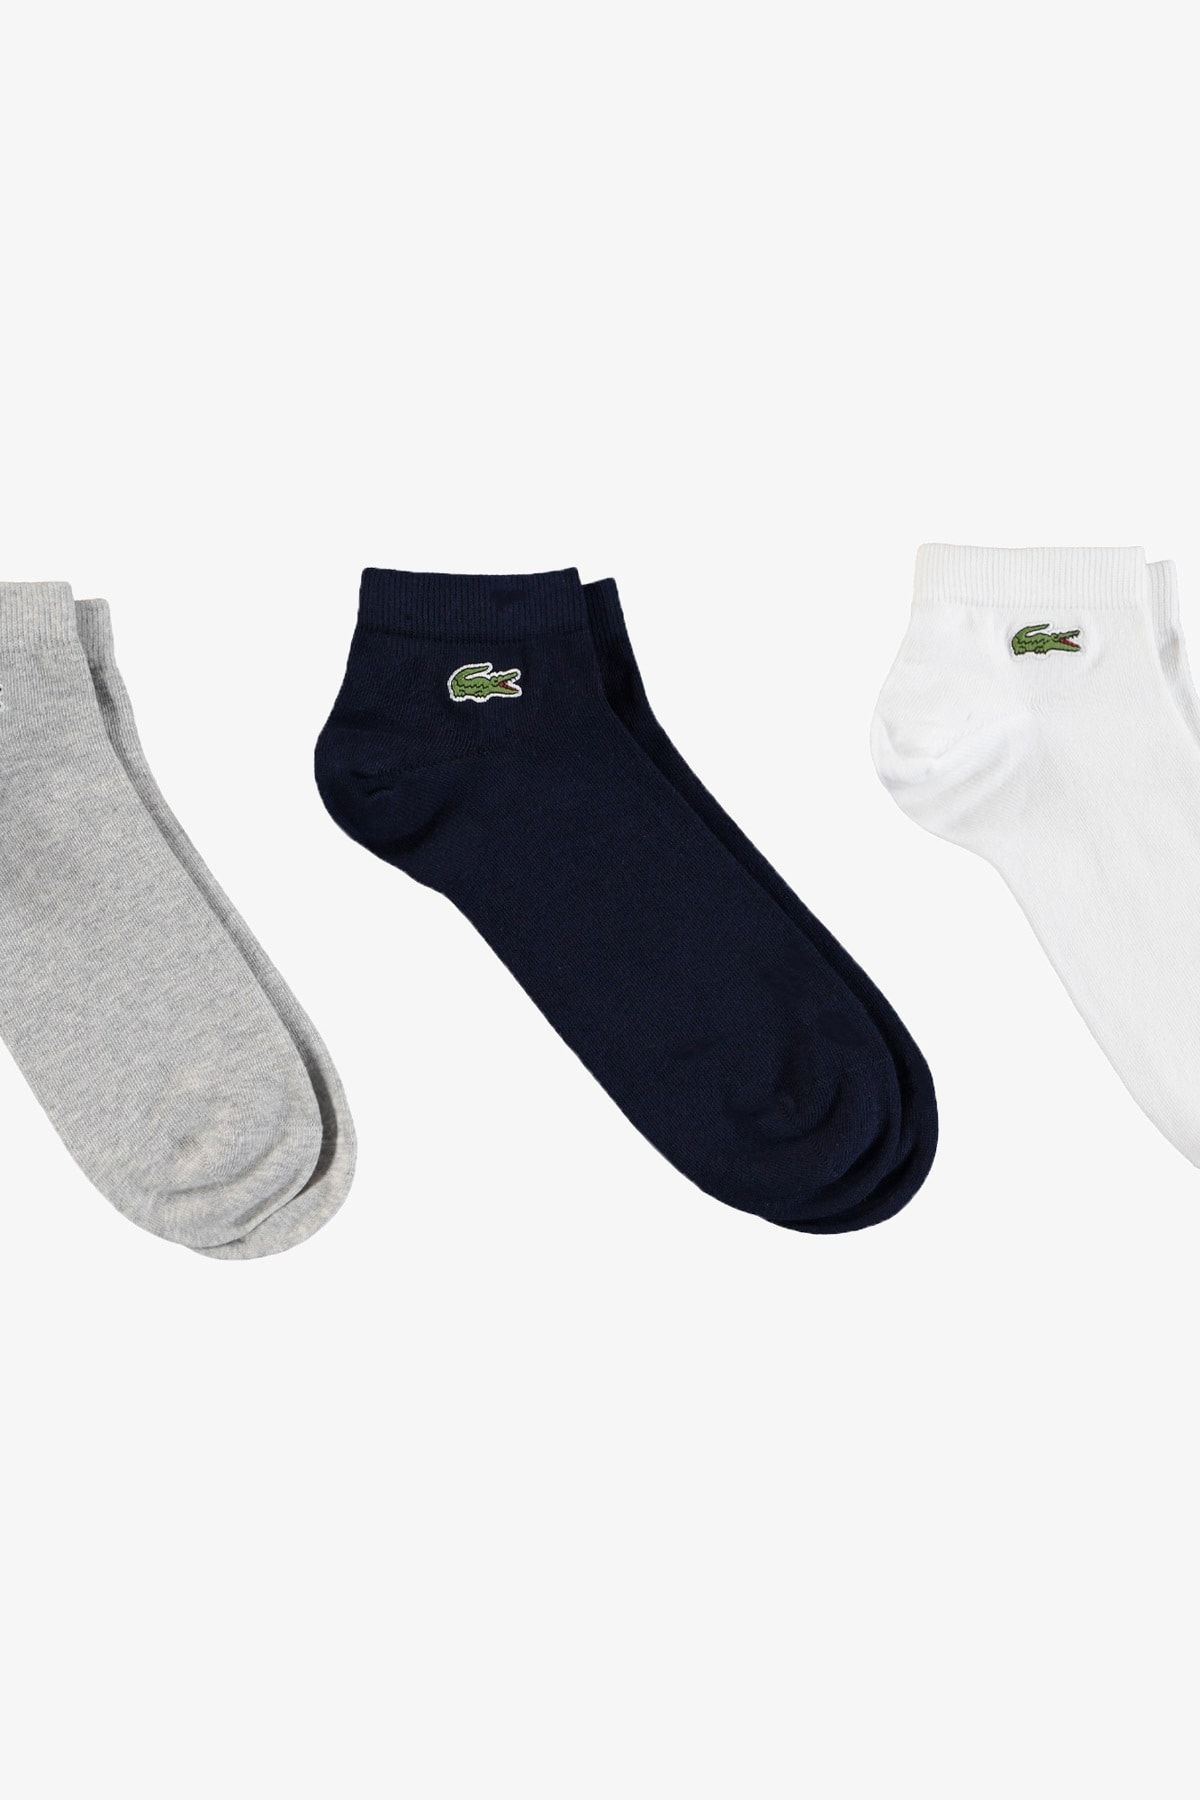 Lacoste Sport Unisex Kısa Beyaz - Lacivert - Gri 3'lü Çorap